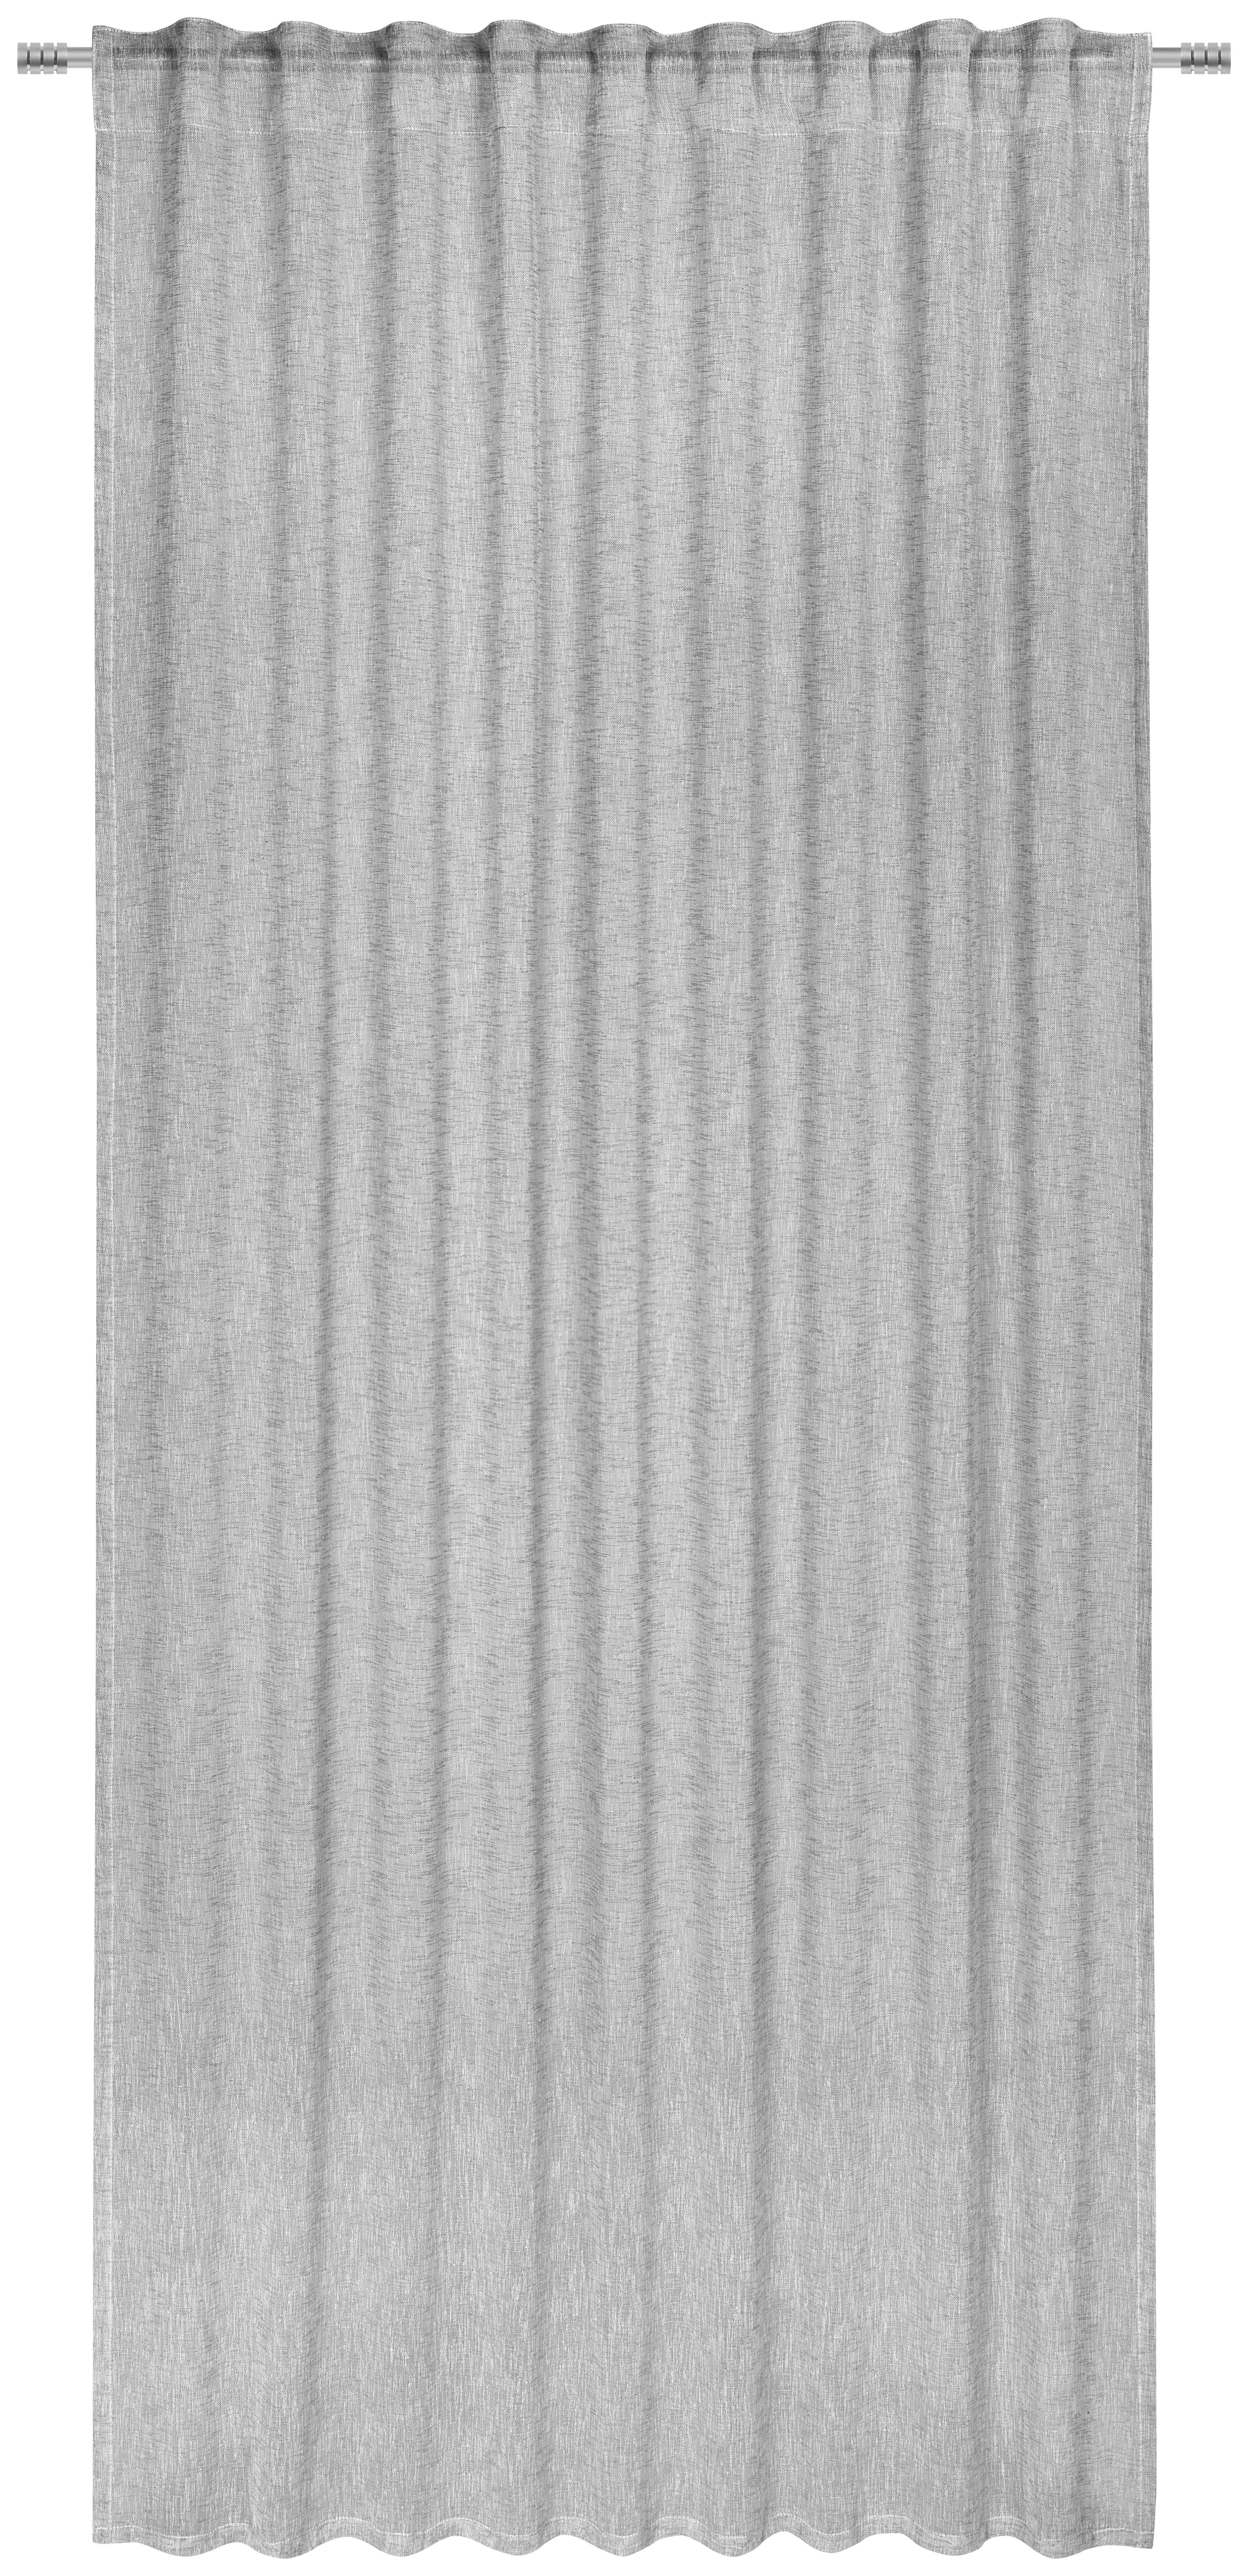 GARDINLÄNGD halvtransparent  - grå, Basics, textil (140/245cm) - Esposa